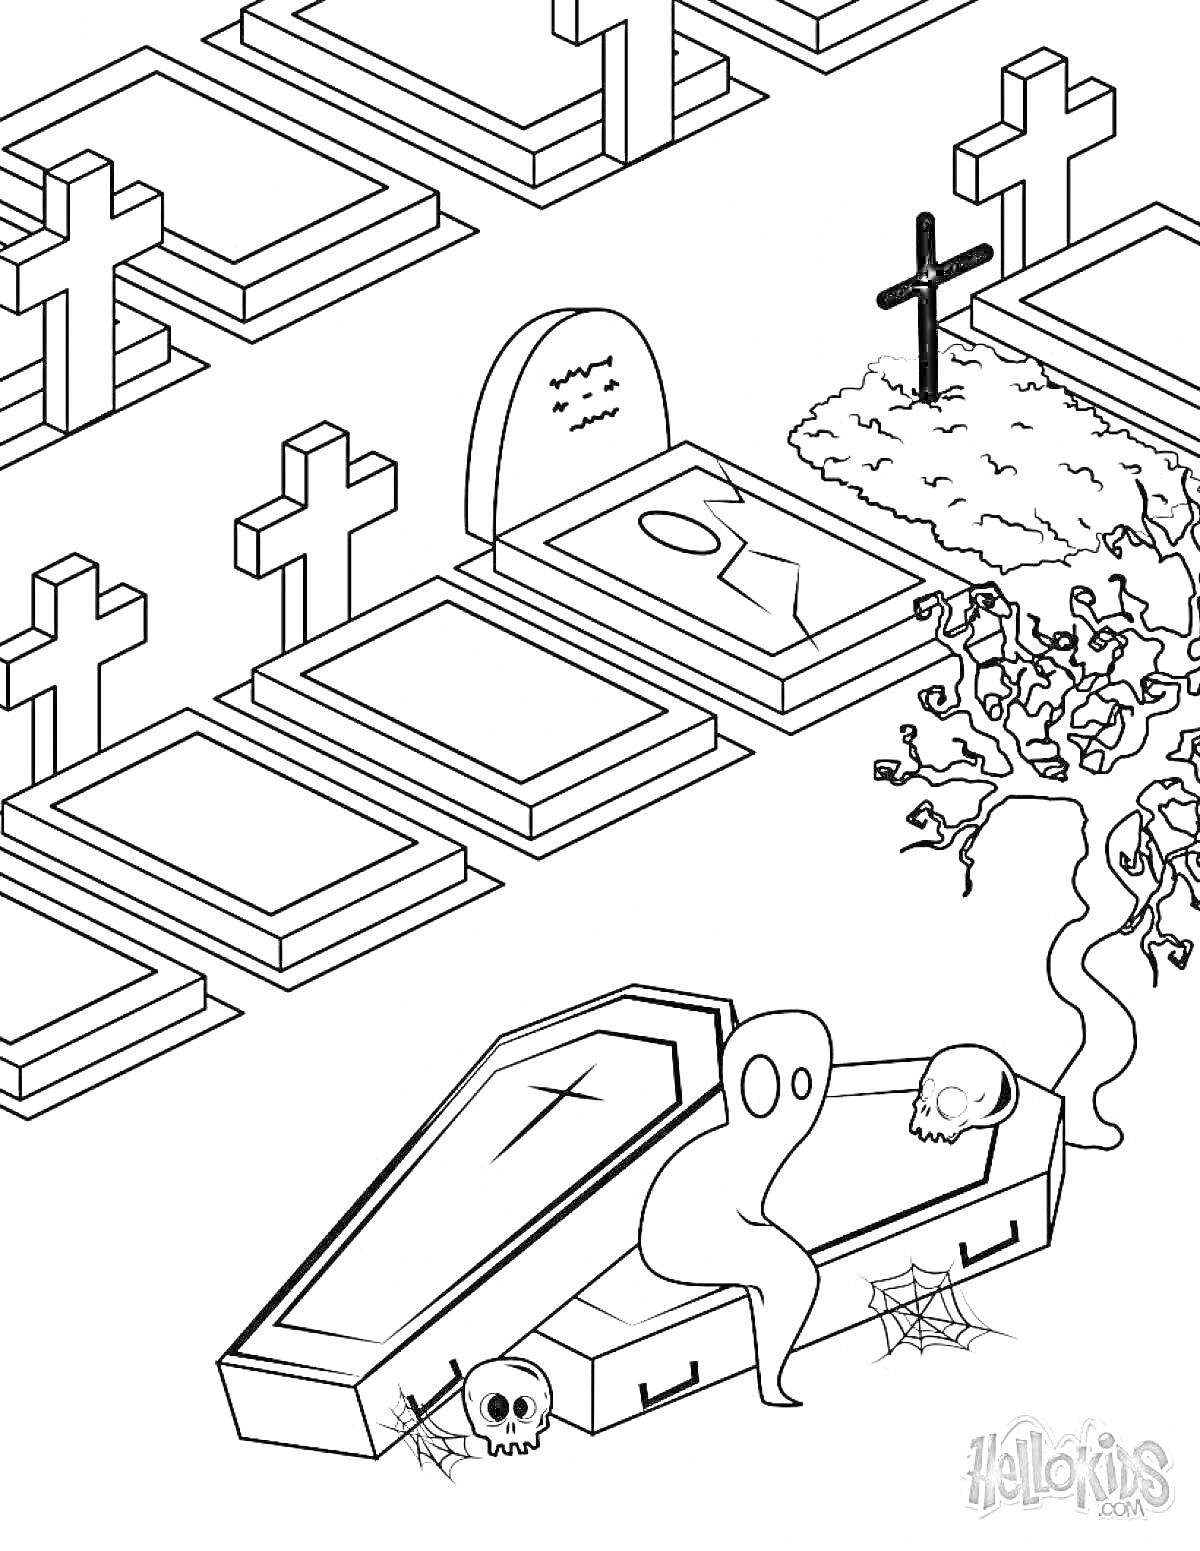 Раскраска кладбище с крестами, надгробиями, открытым гробом, привидением, черепом, деревом и паутиной